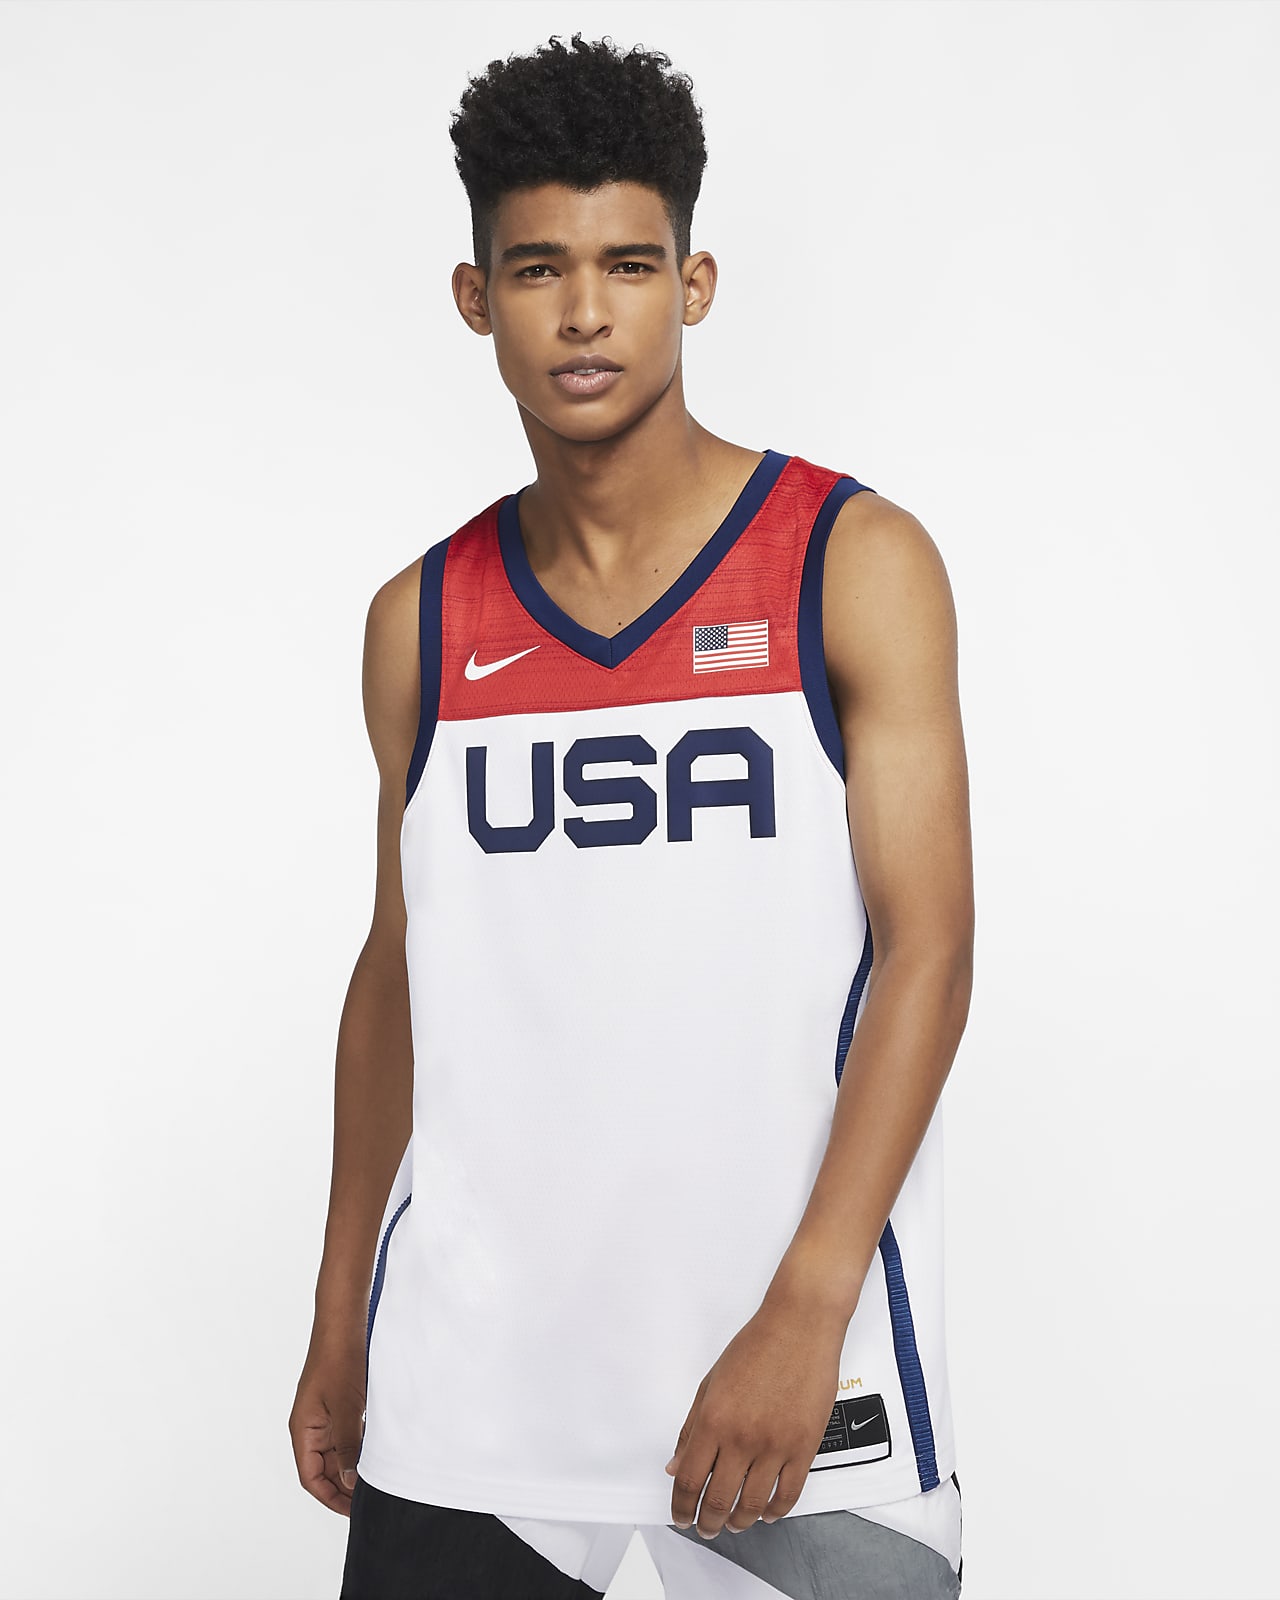 de básquetbol para hombre de Nike USA Nike.com